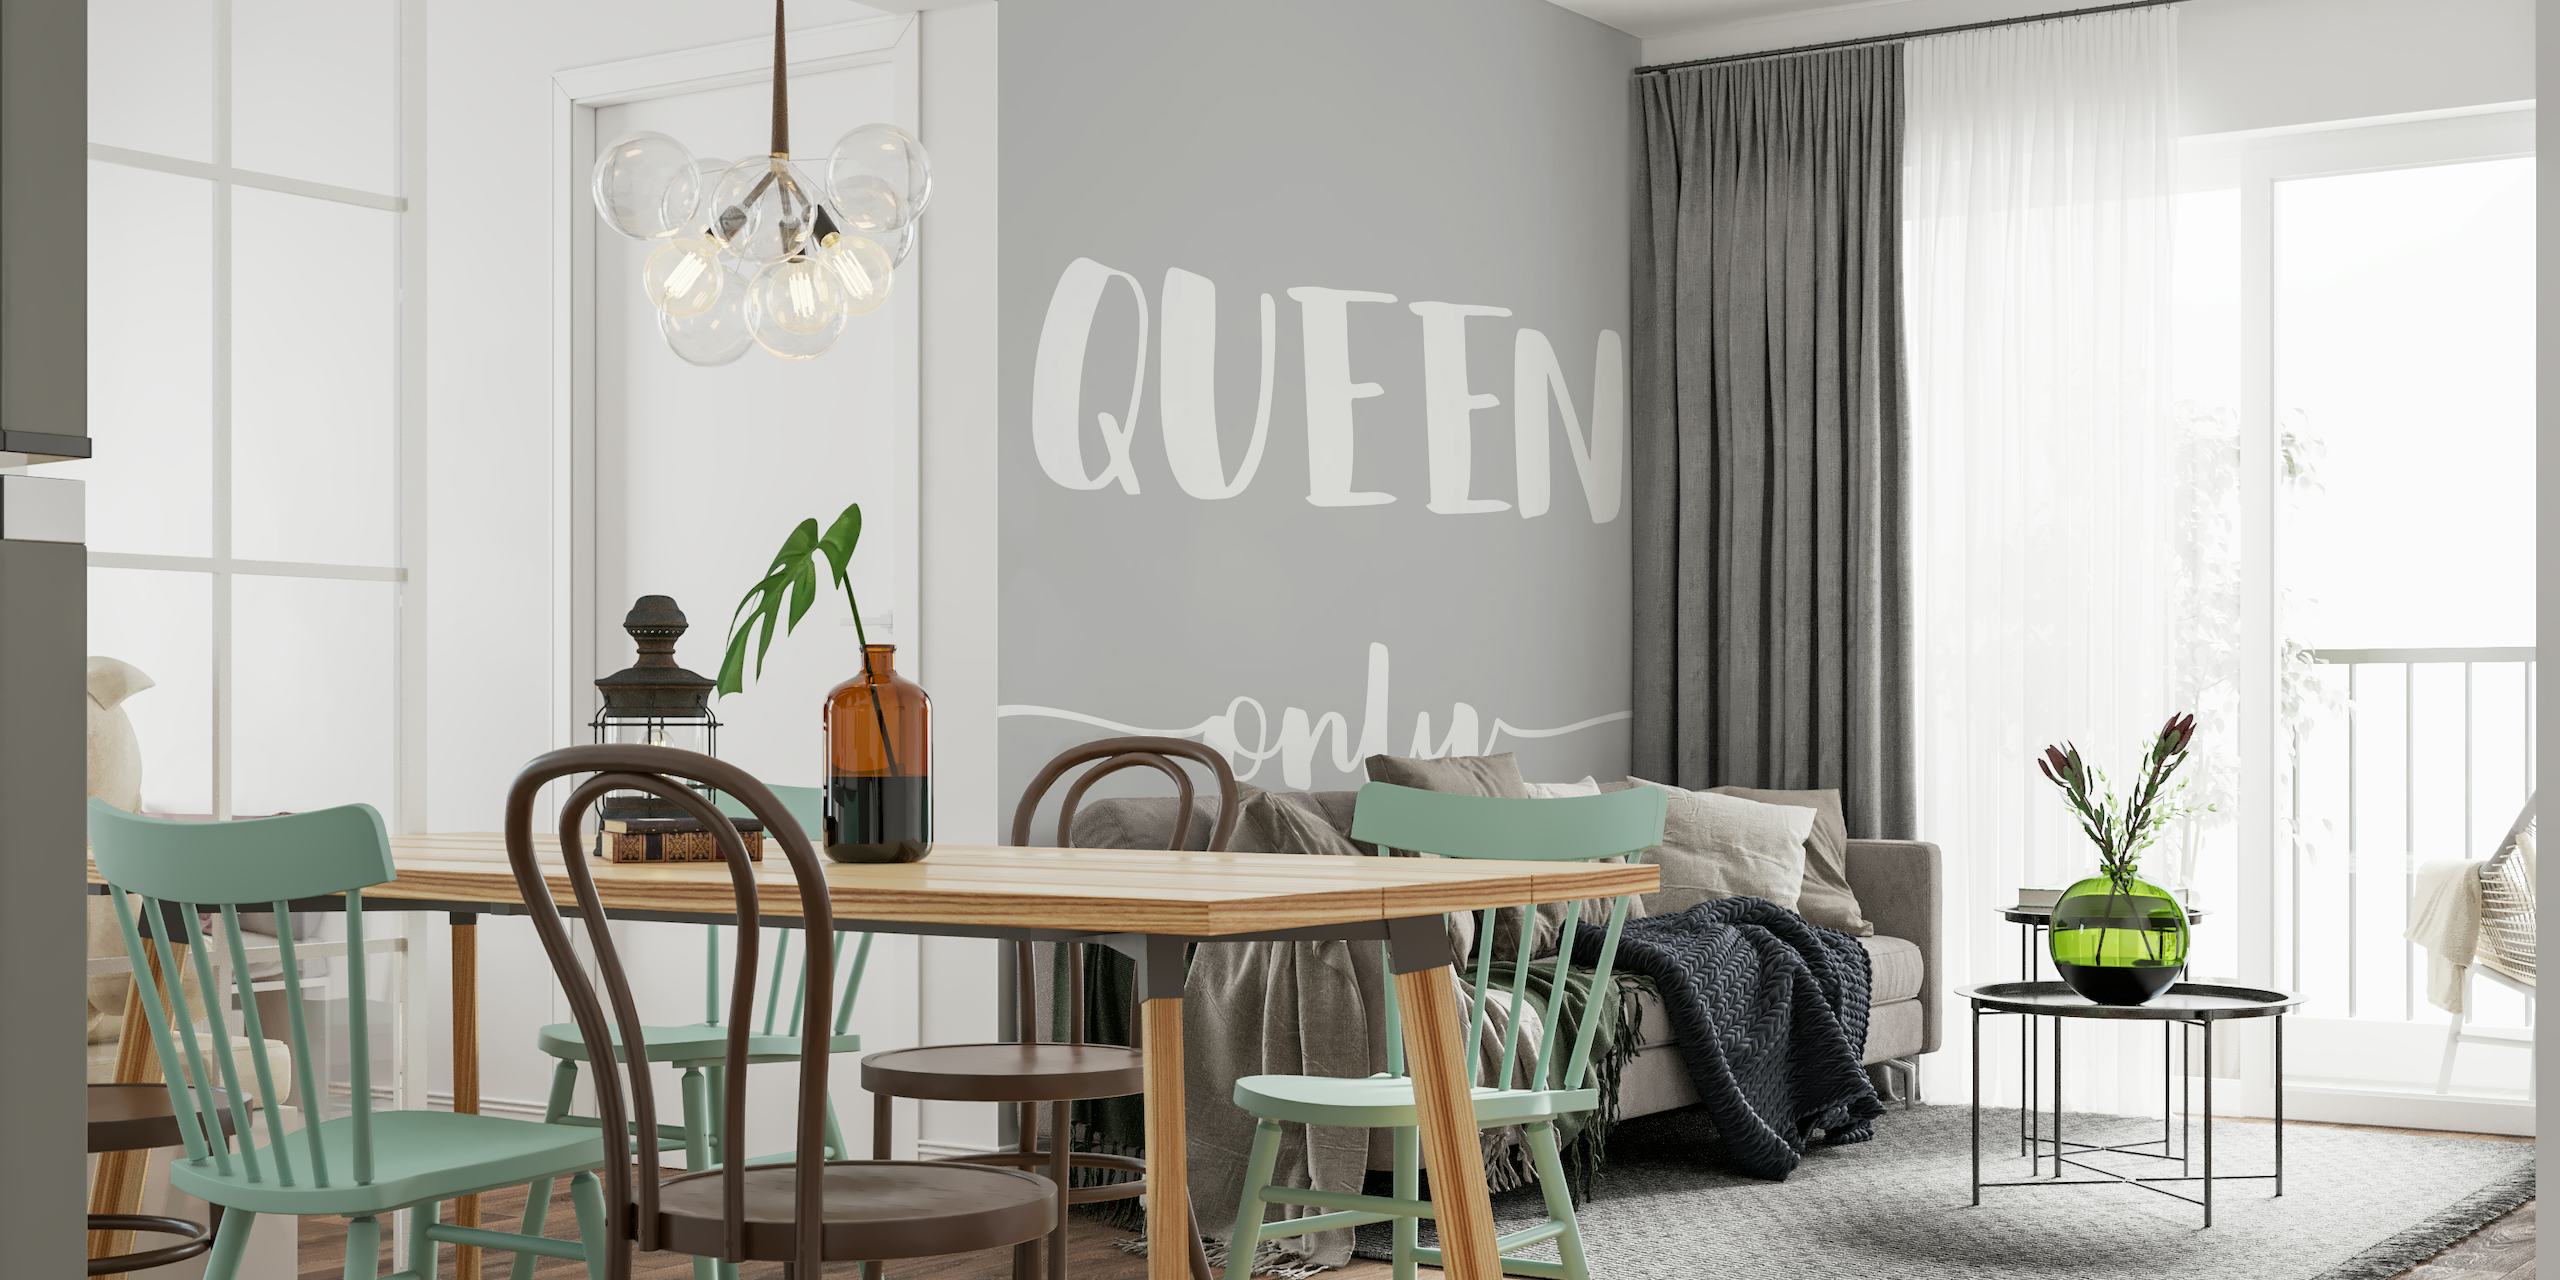 Minimalistische 'Queen Only' tekstmuurschildering in grijs en wit